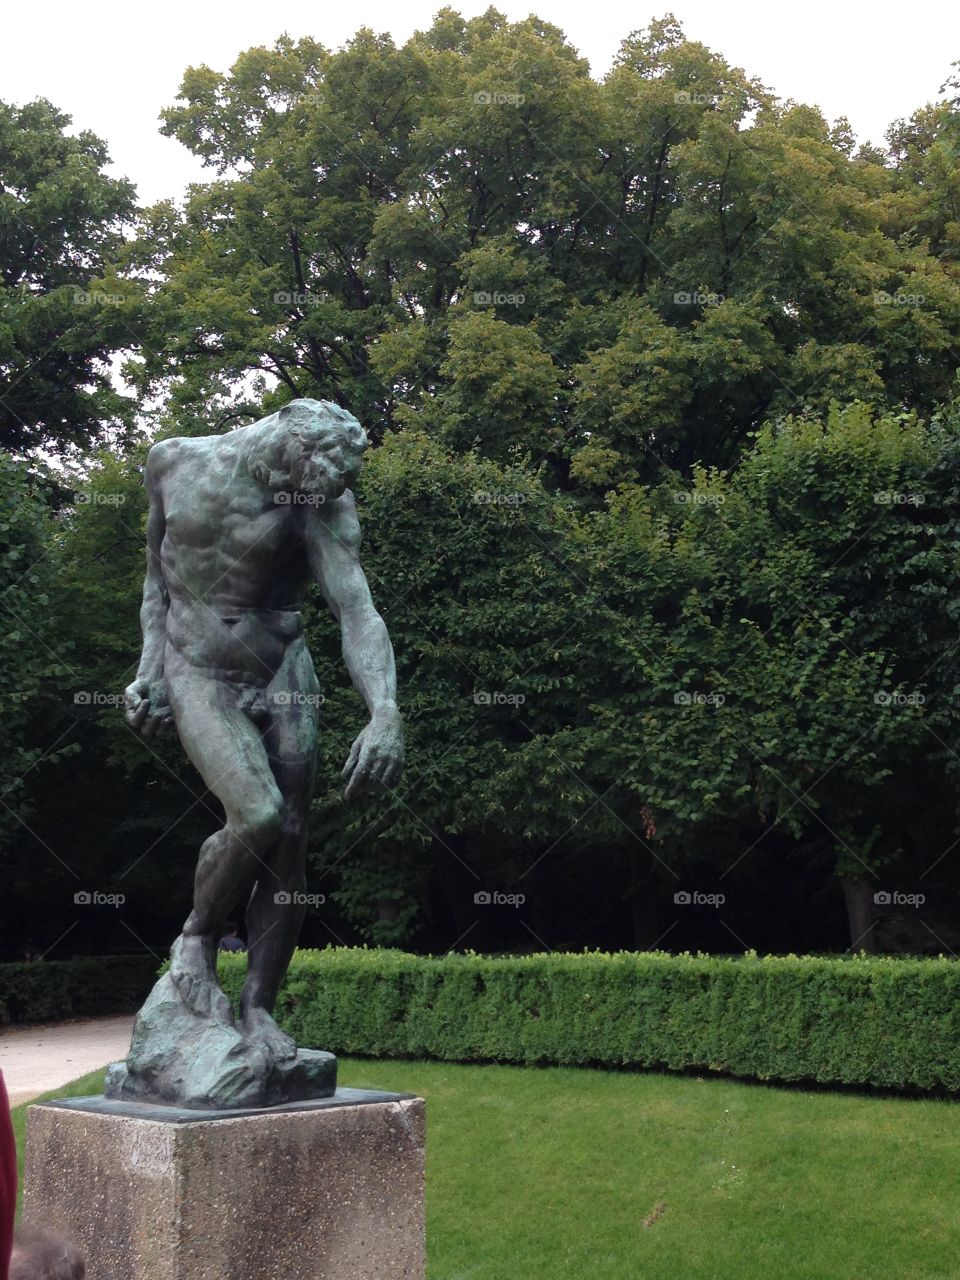 Musee Rodin-Rodin Museum France